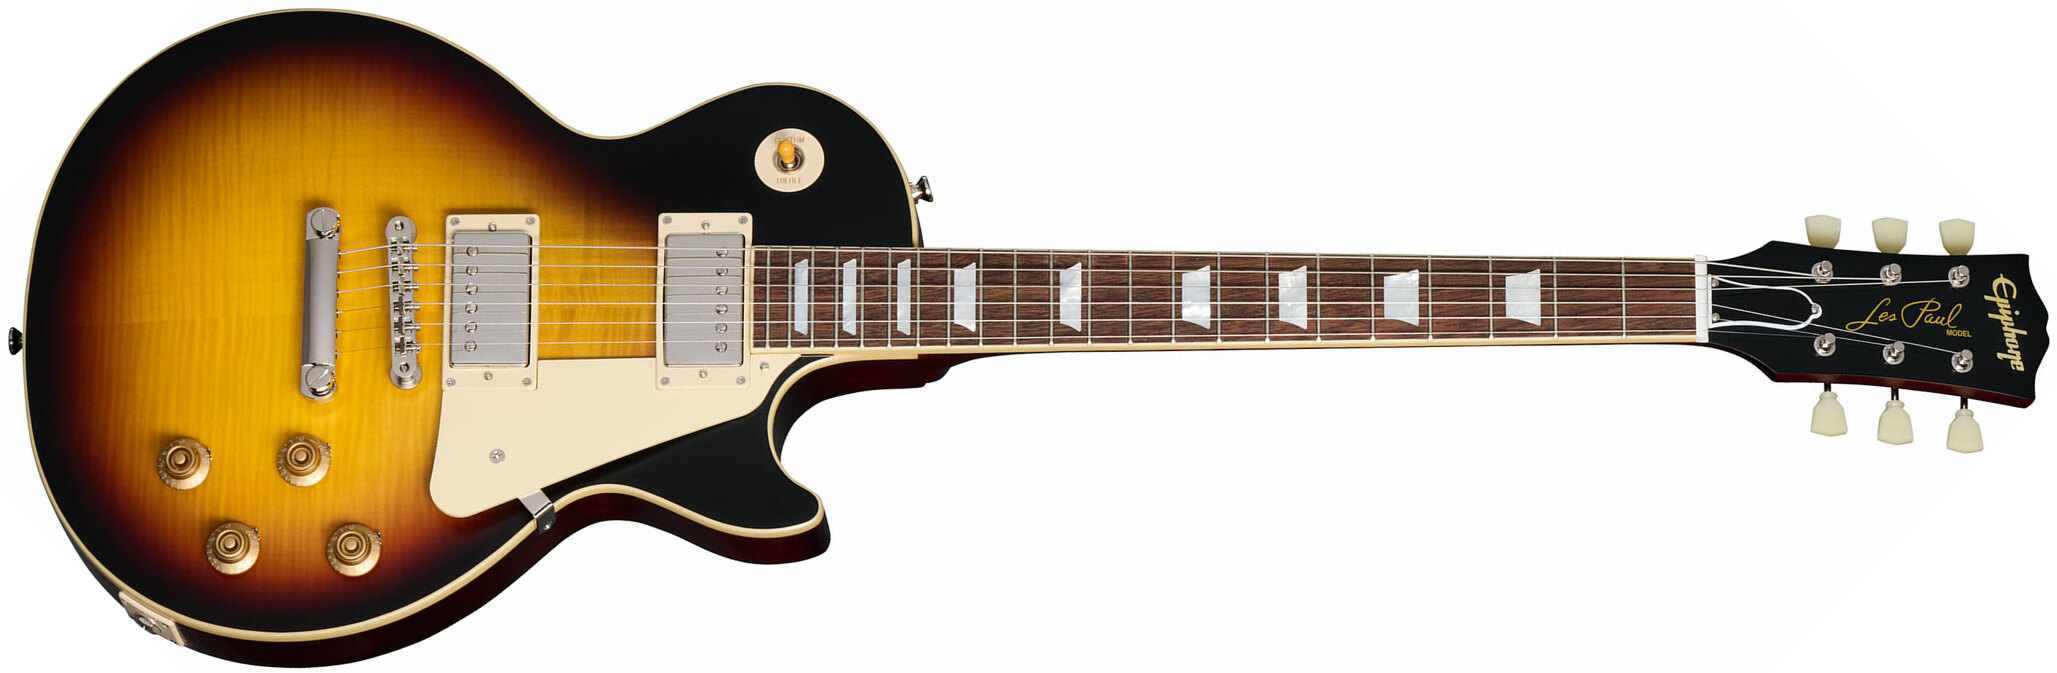 Epiphone 1959 Les Paul Standard Inspired By 2h Gibson Ht Lau - Vos Tobacco Burst - Guitarra eléctrica de corte único. - Main picture